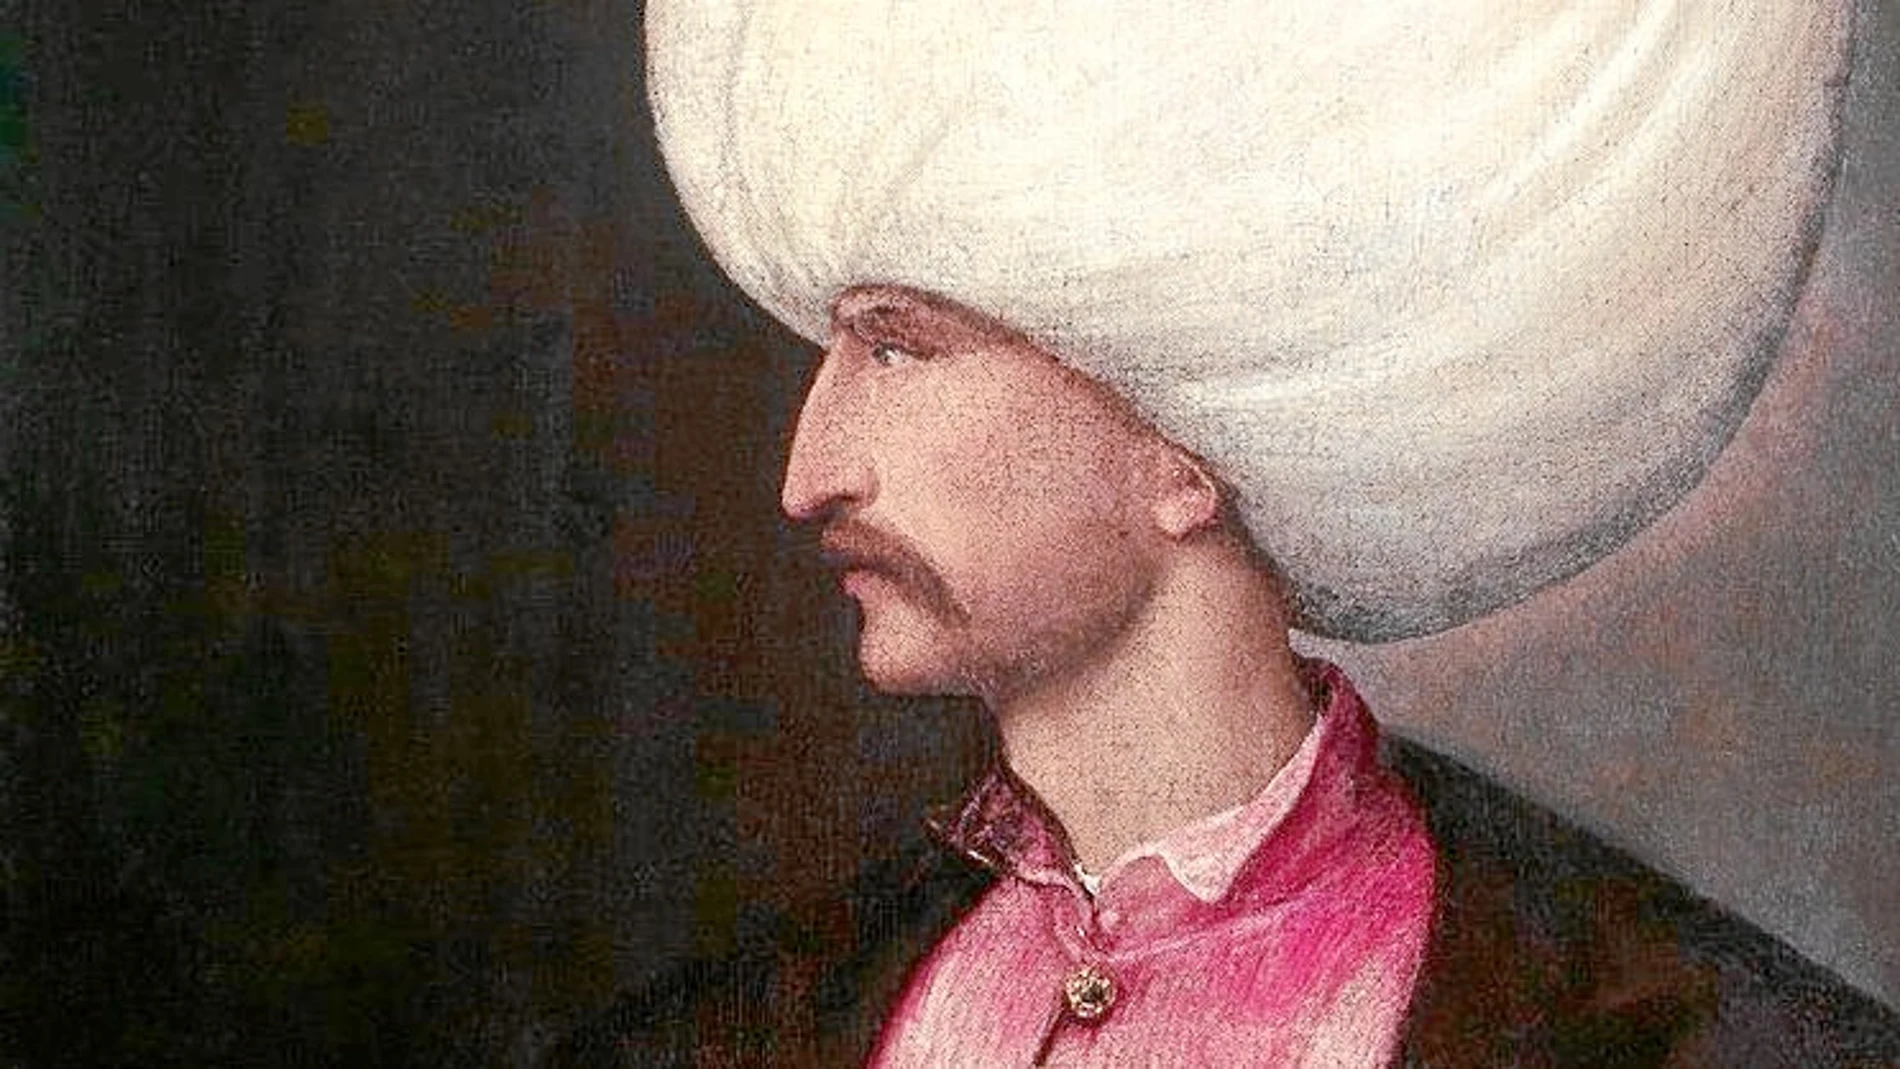 Solimán lideró el Imperio otomano de 1520 a 1566, fecha de su muerte